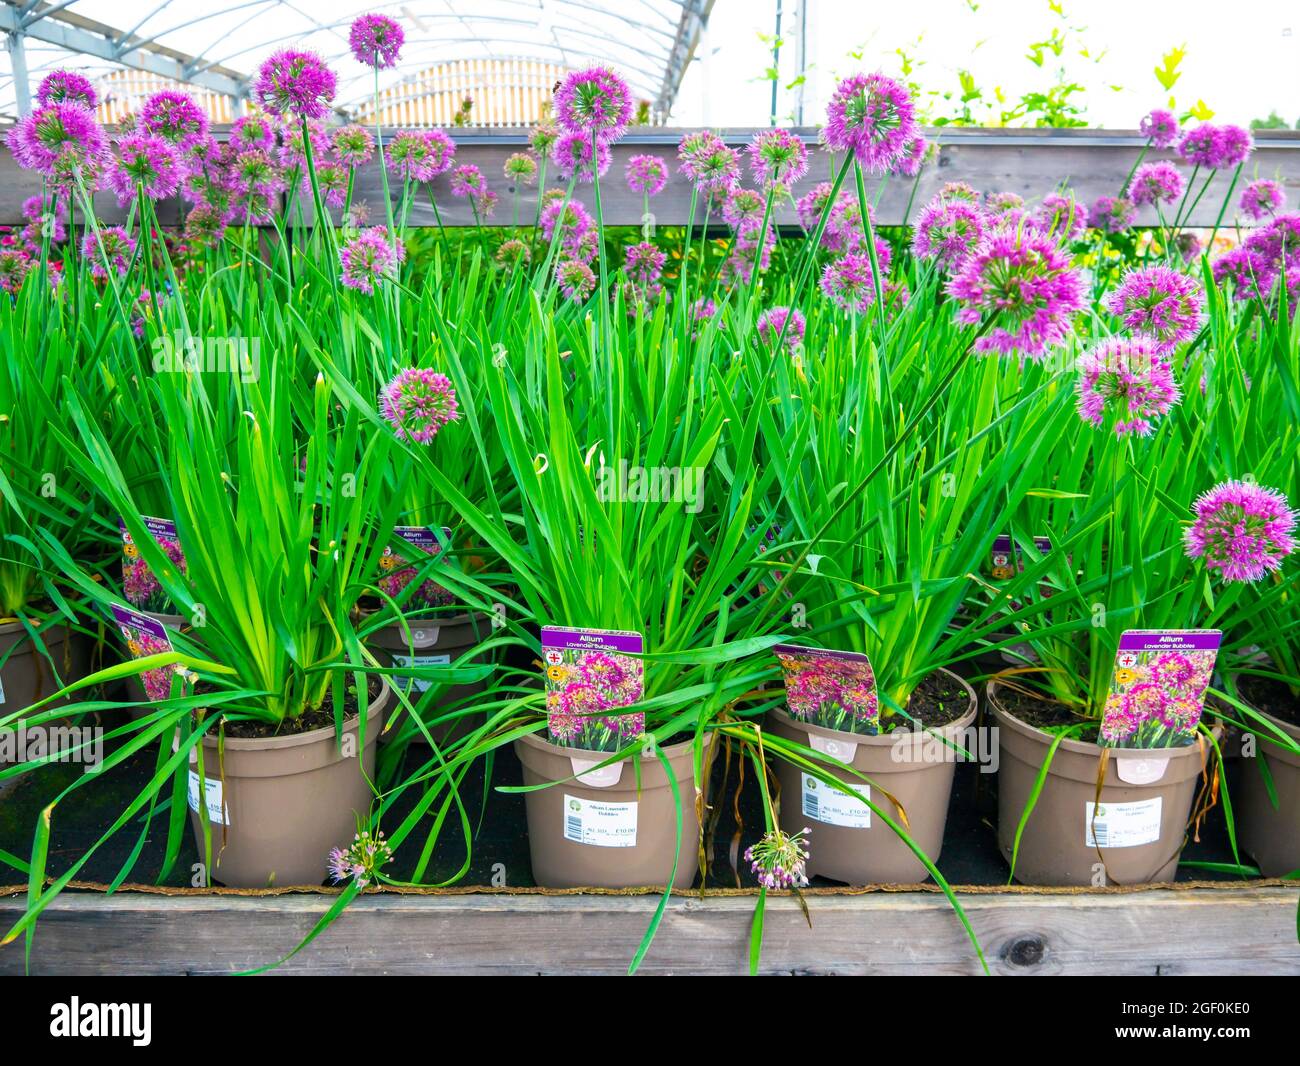 Garden Center muestra de Alliums variedad lavanda burbujas macetas plantas para el otoño a un precio de £10,00 cada uno Foto de stock